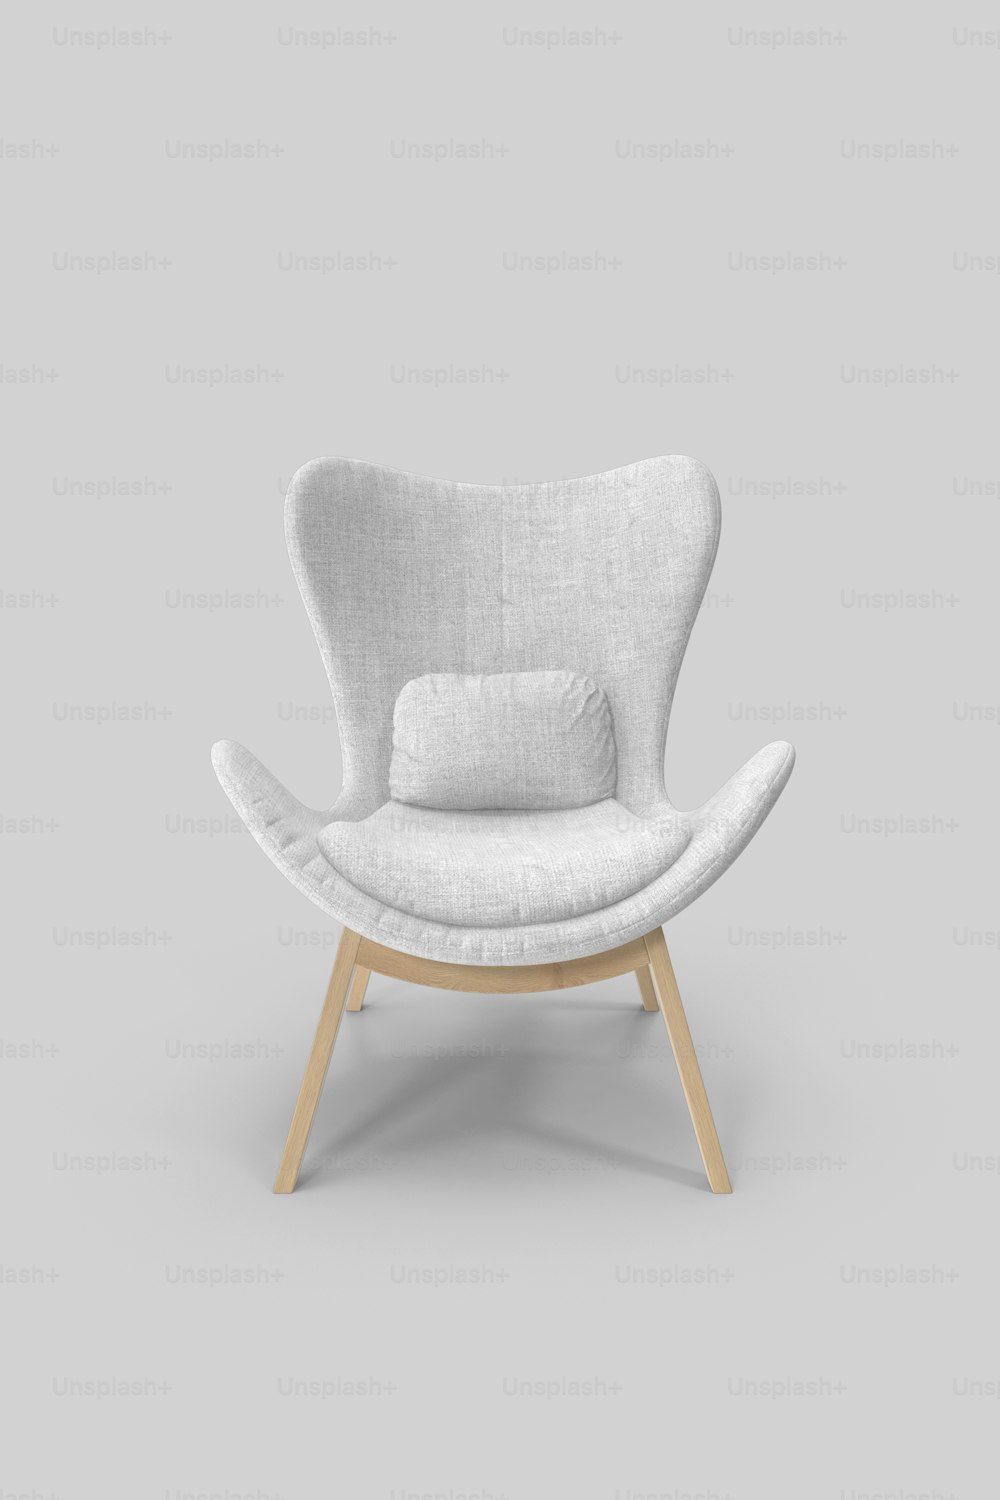 ein weißer Stuhl mit einem Kissen darauf